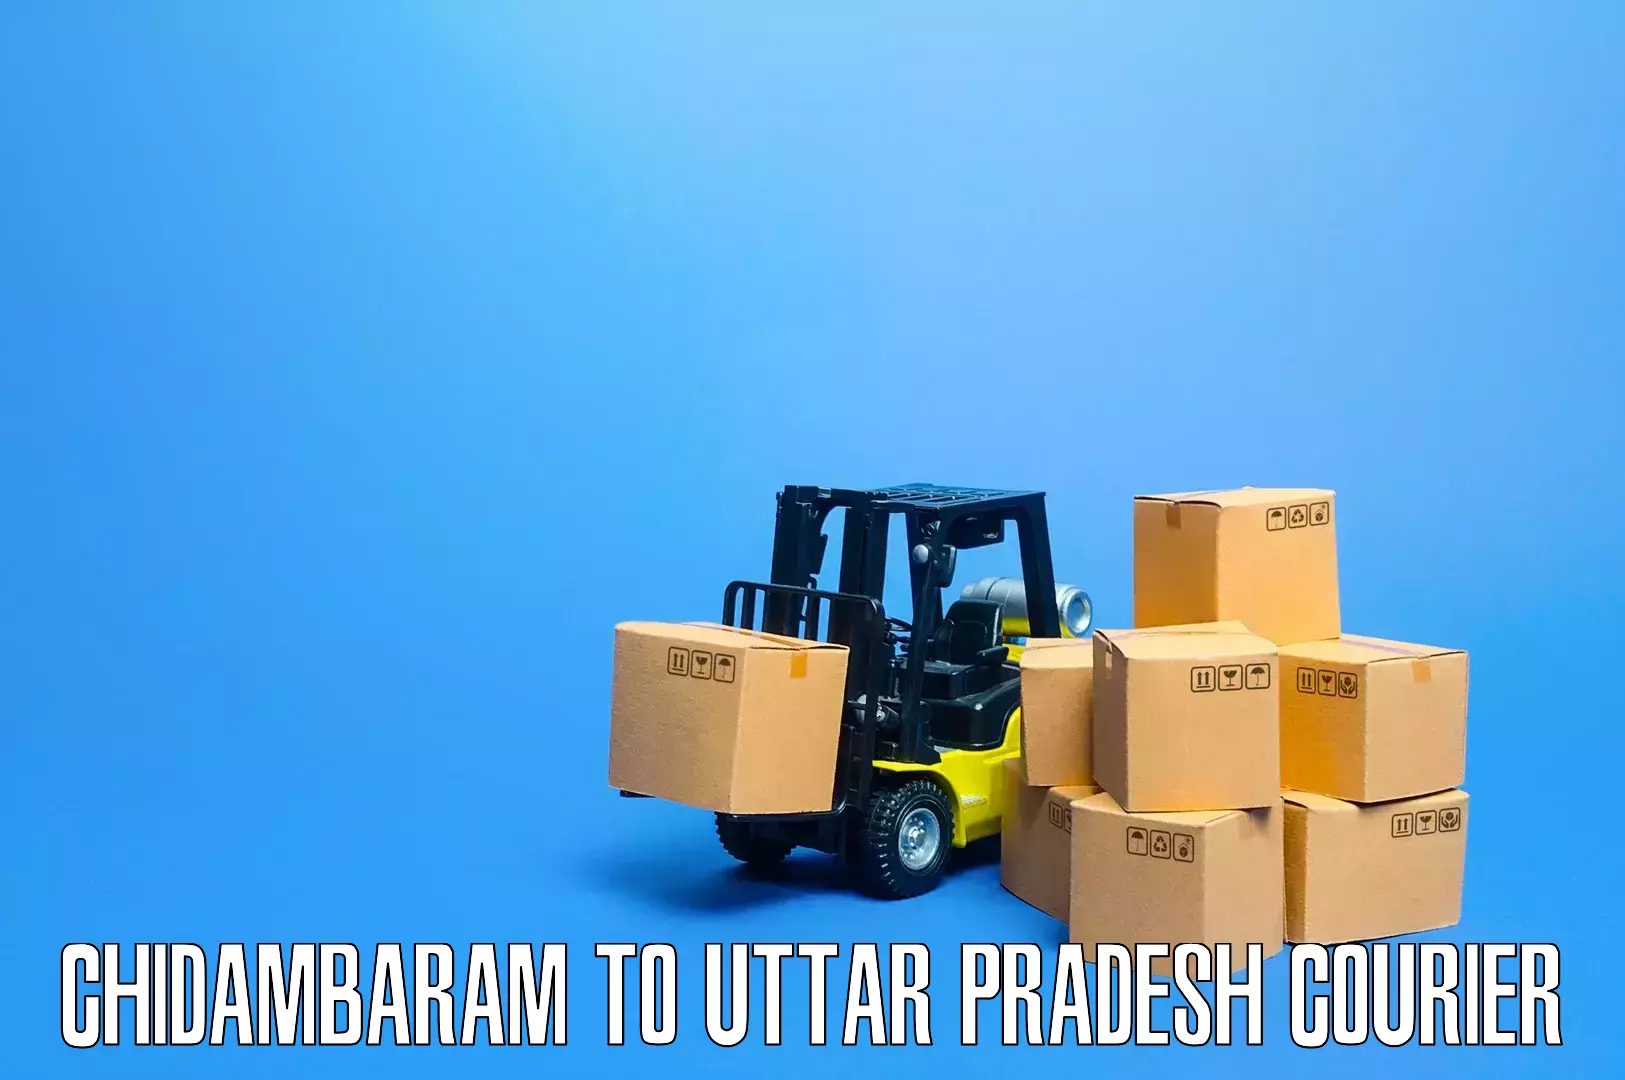 Local furniture movers Chidambaram to Bijnor